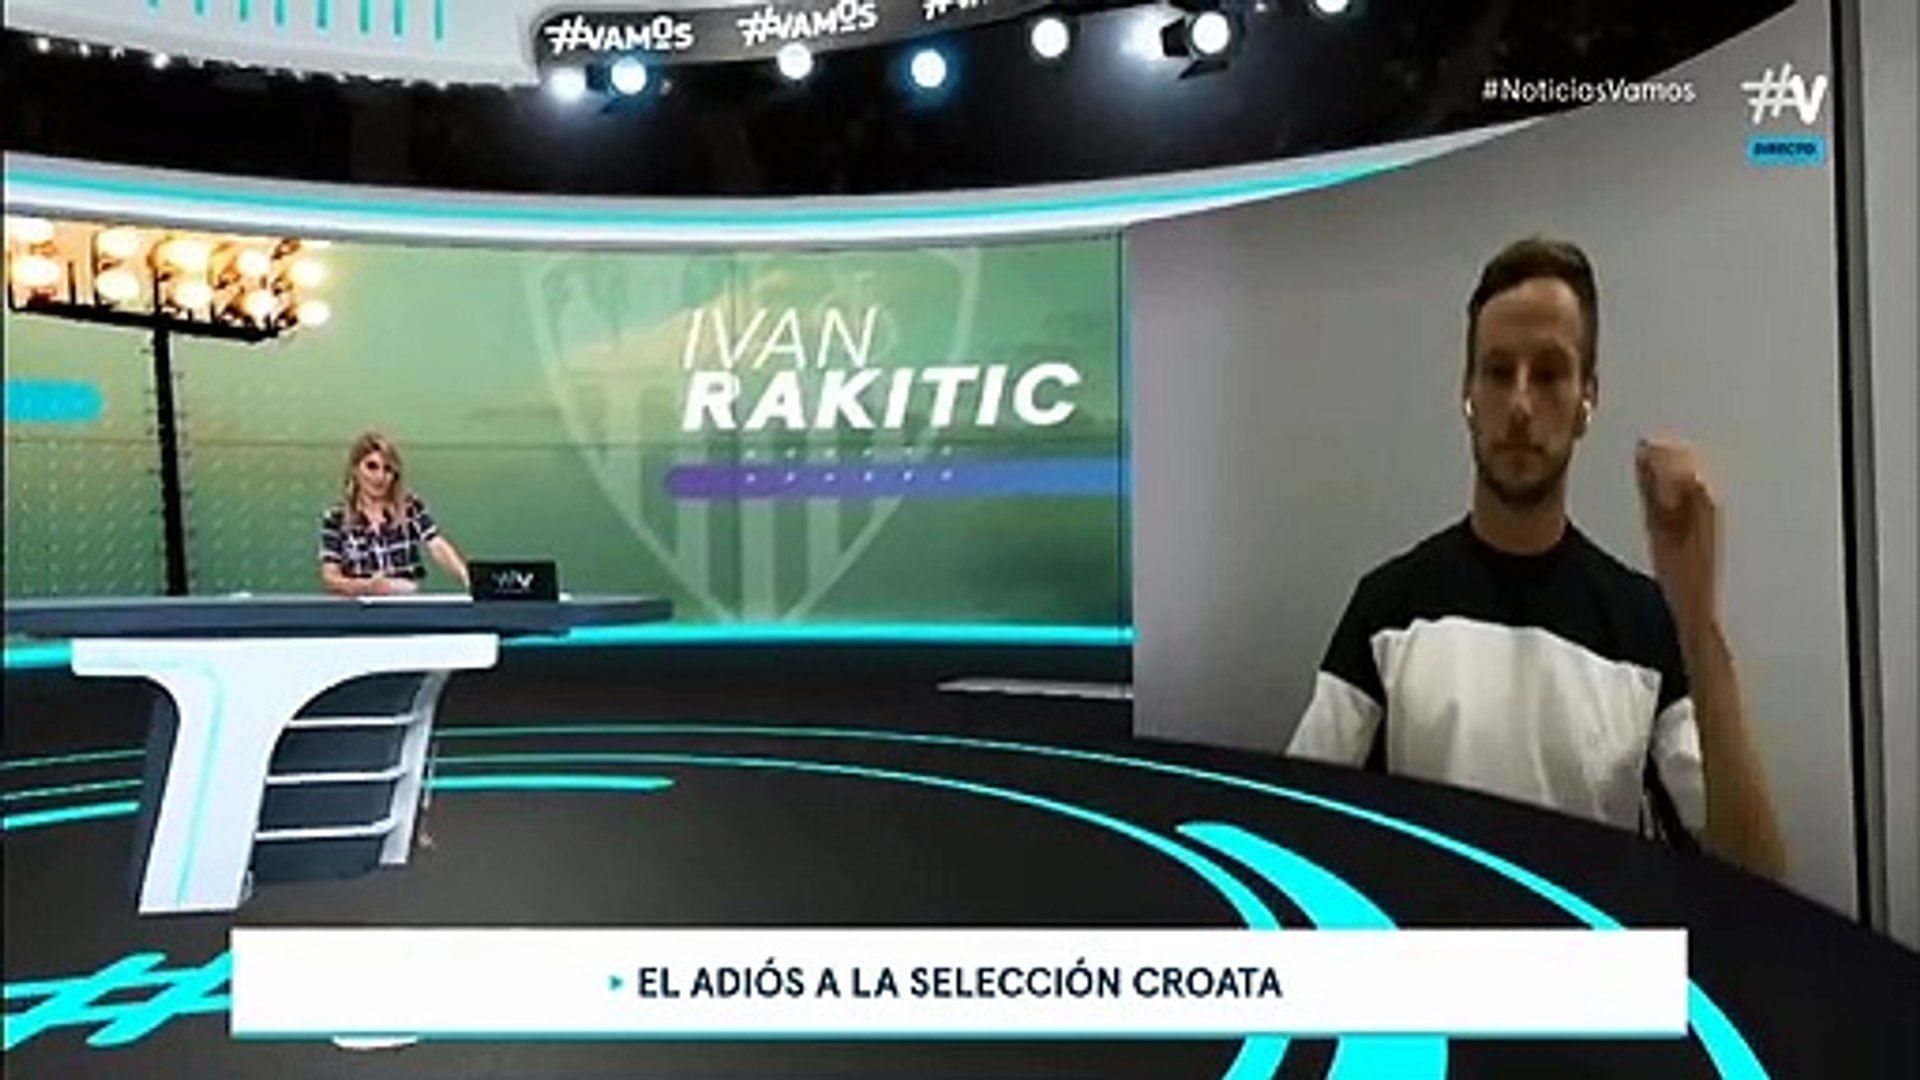 Rakitic, con su costal listo para 2021, habla de los objetivos del Sevilla, elogia a Navas y se emociona hablando de Reyes